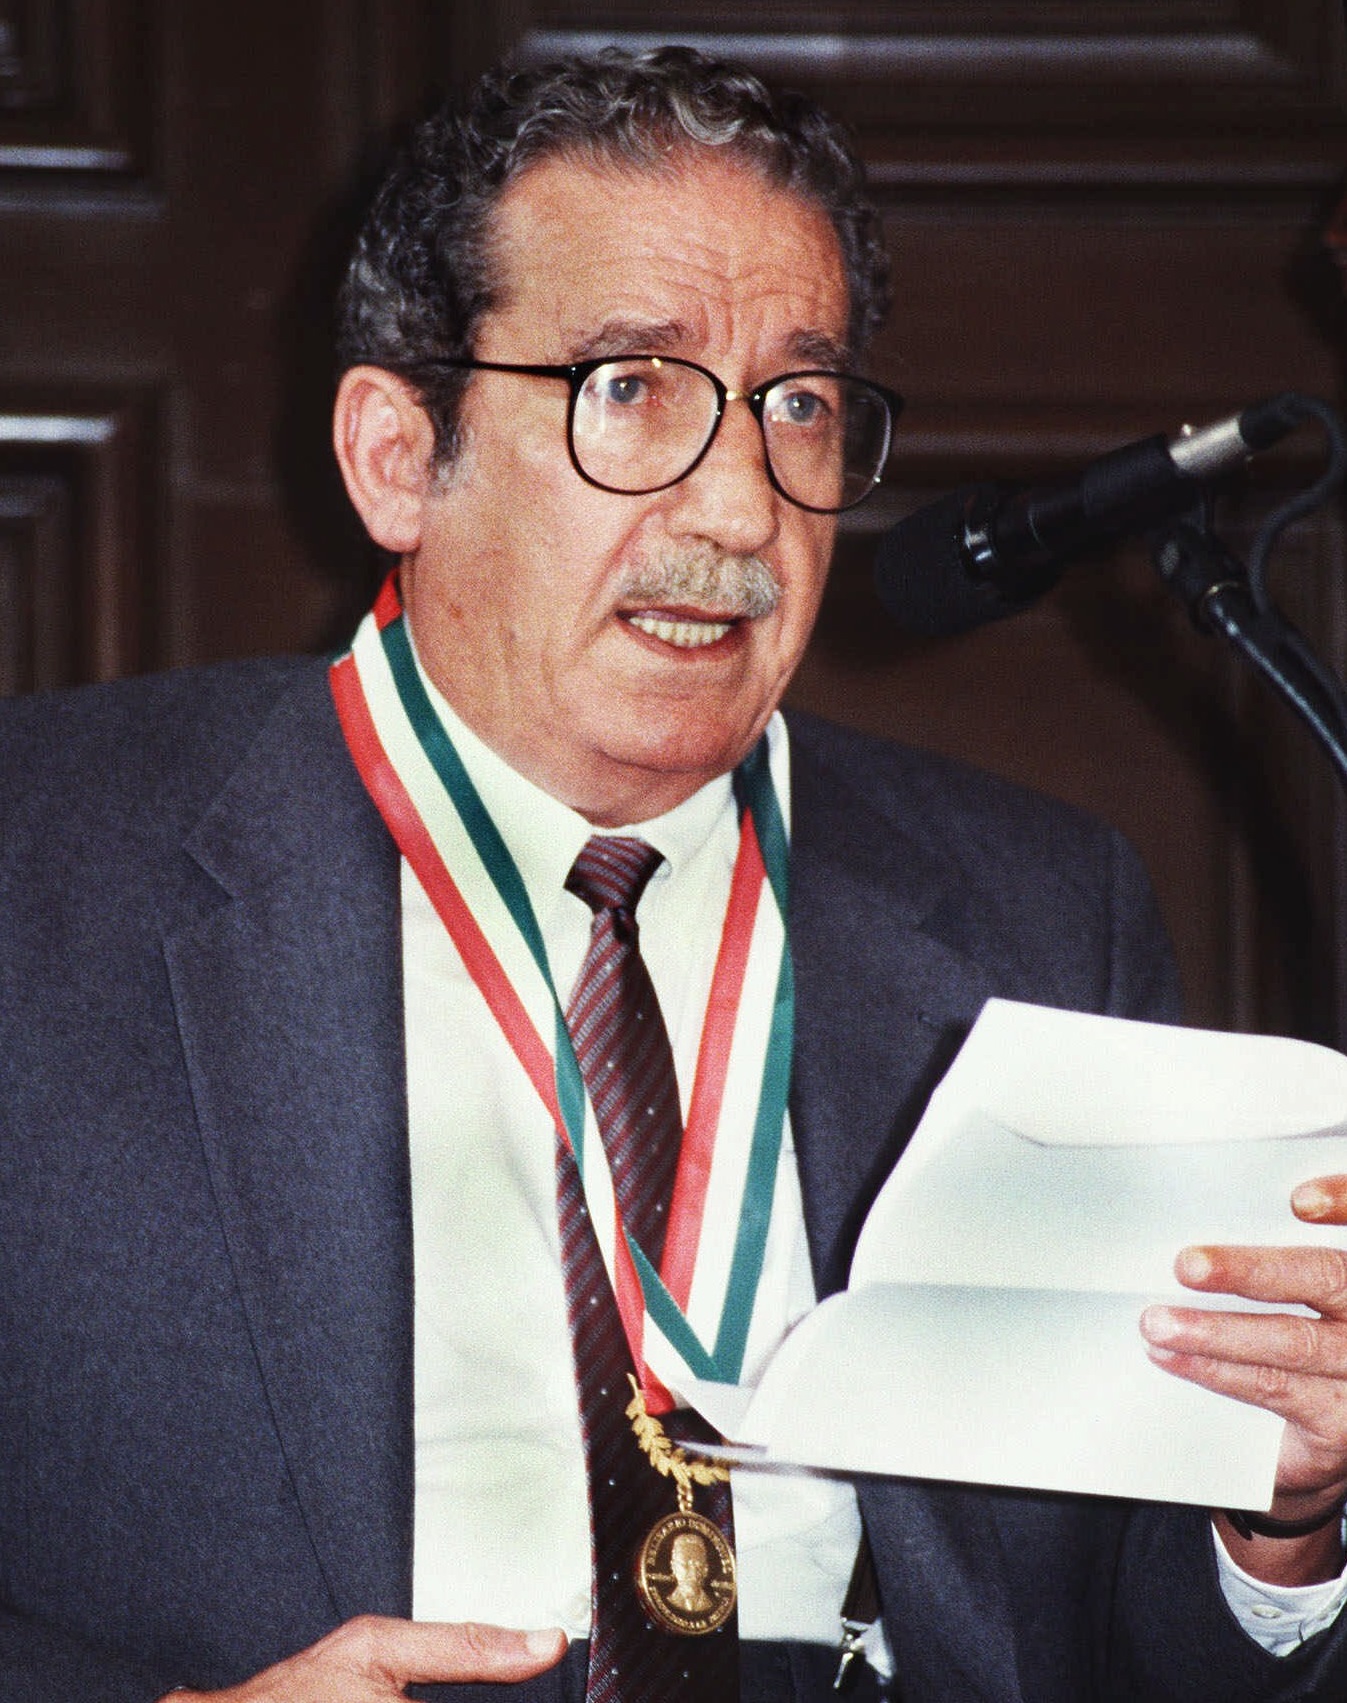 Una foto del poeta mexicano Jaime Sabines después de recibir la medalla "Belisario Domínguez” (AP)